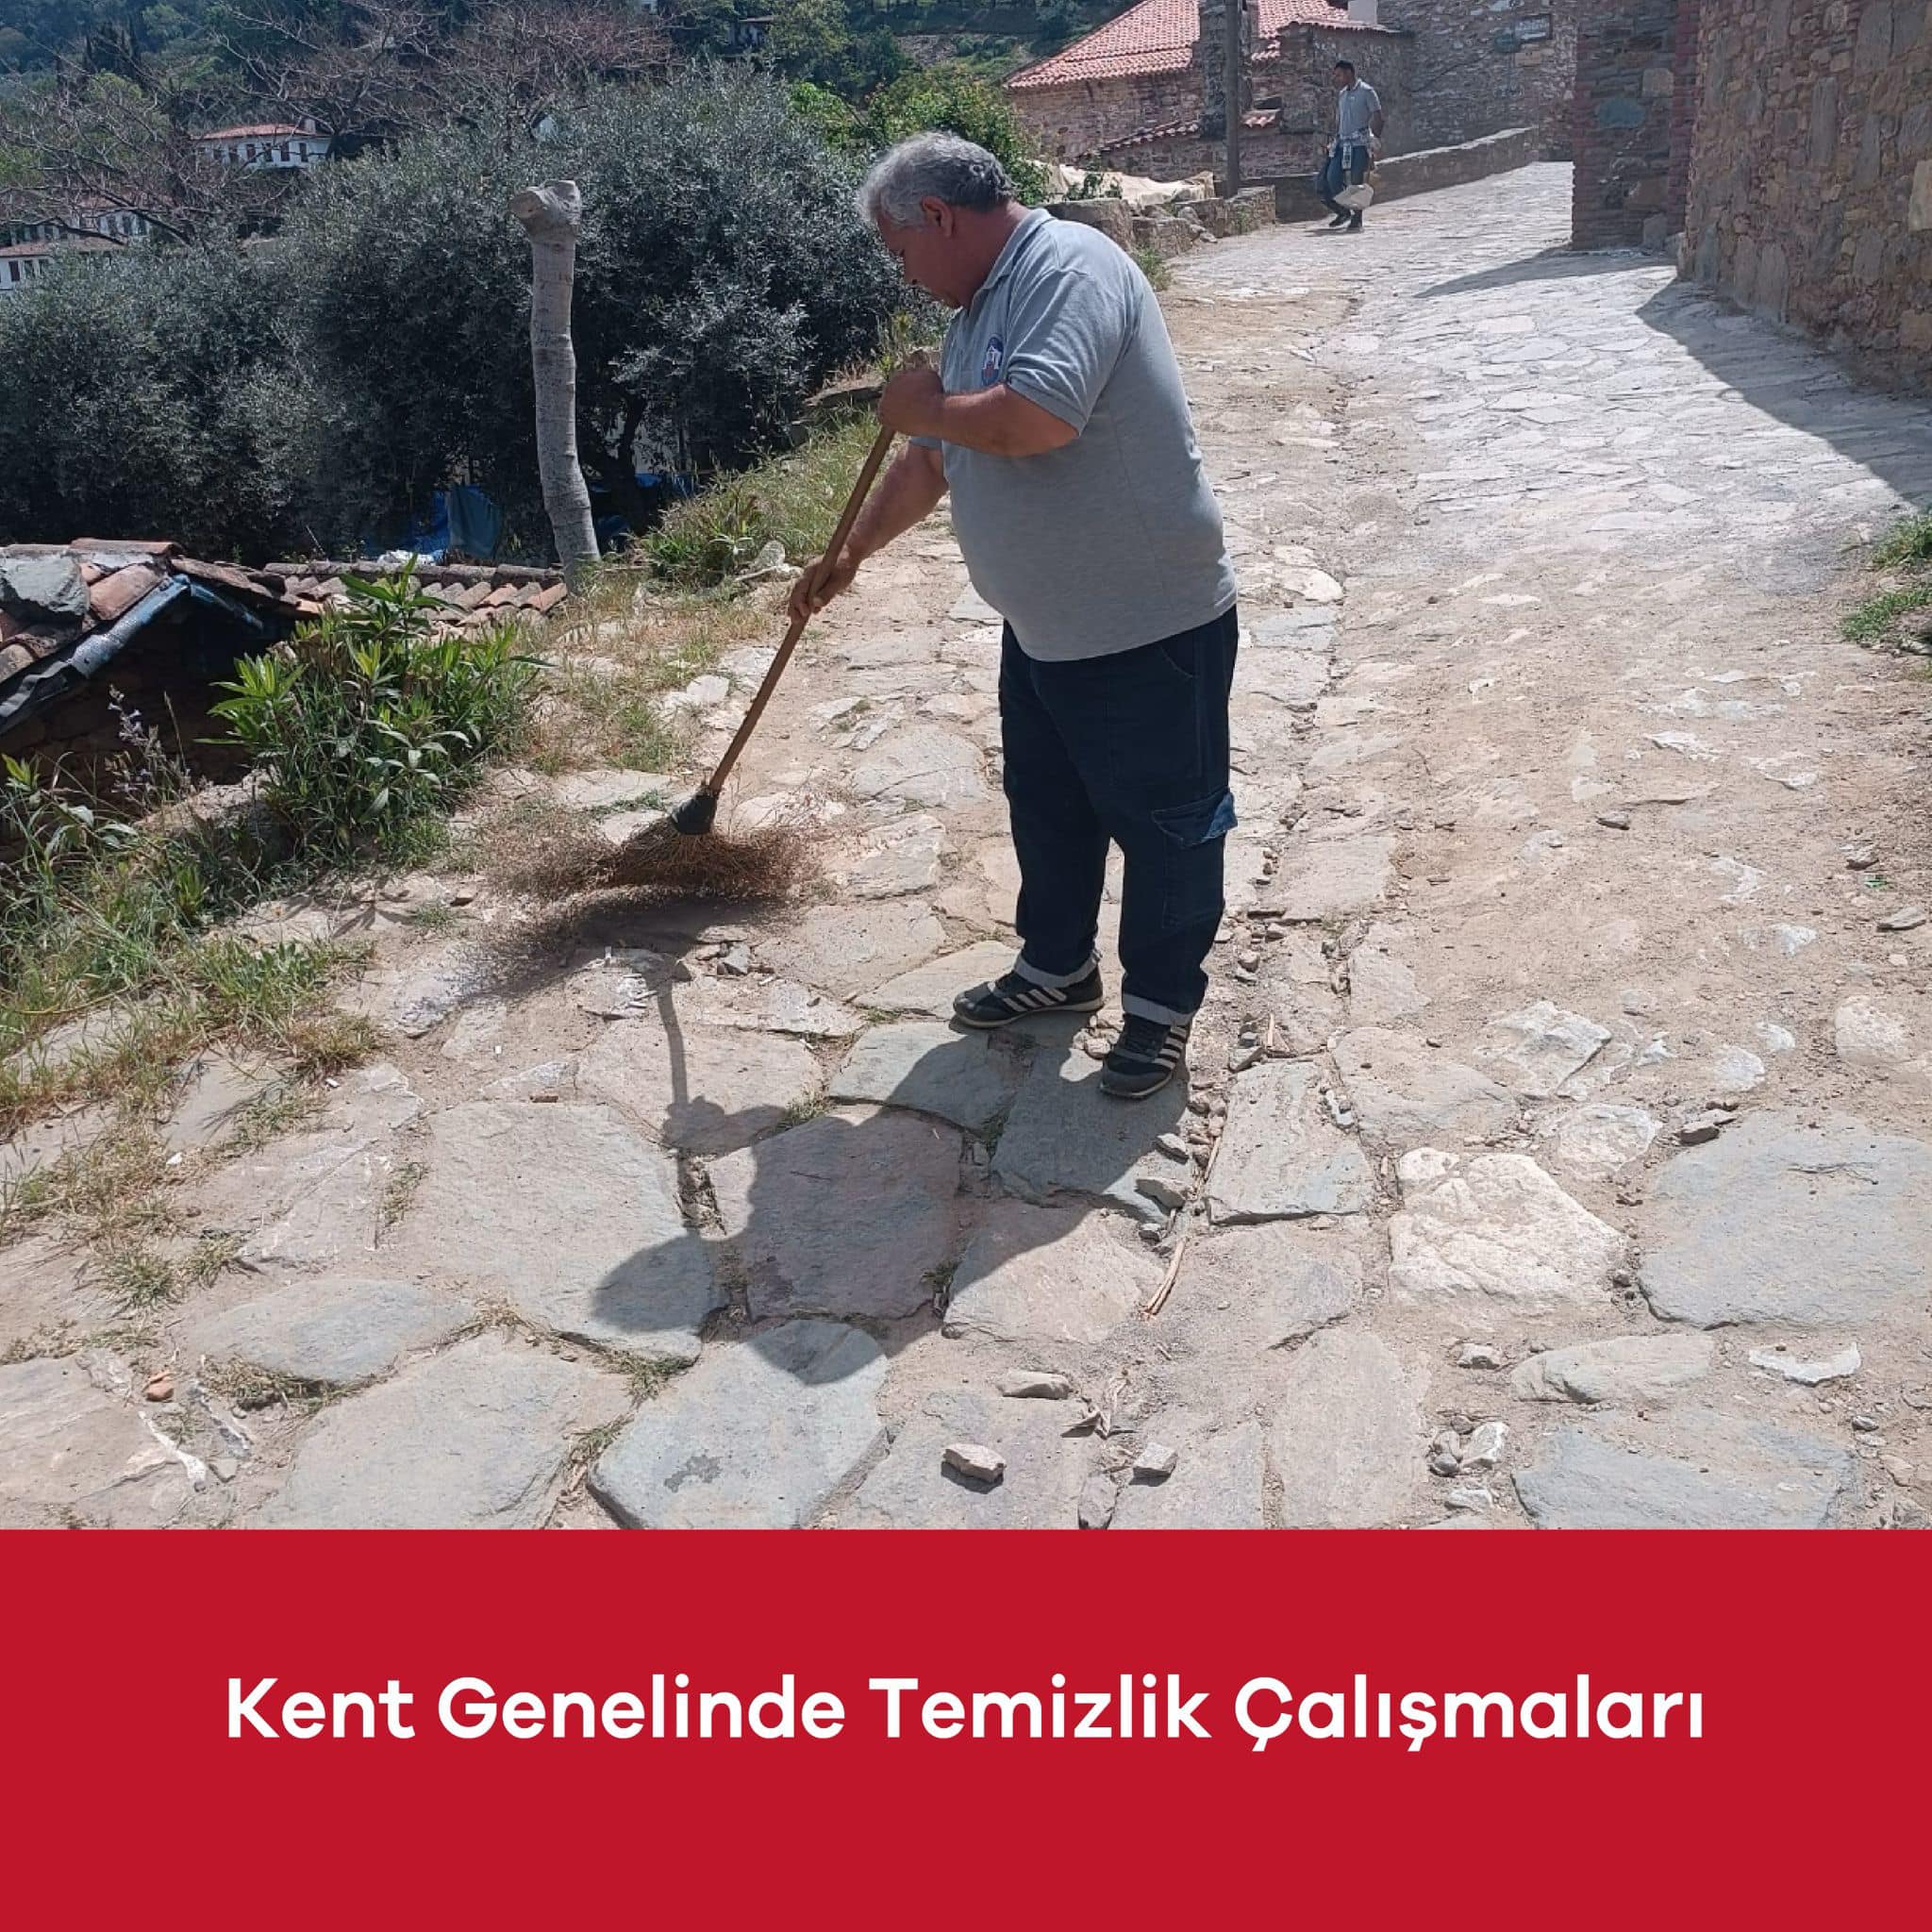 İzmir Selçuk'ta Baharla Birlikte Temizlik ve Düzenleme Çalışmaları Hızlandı!